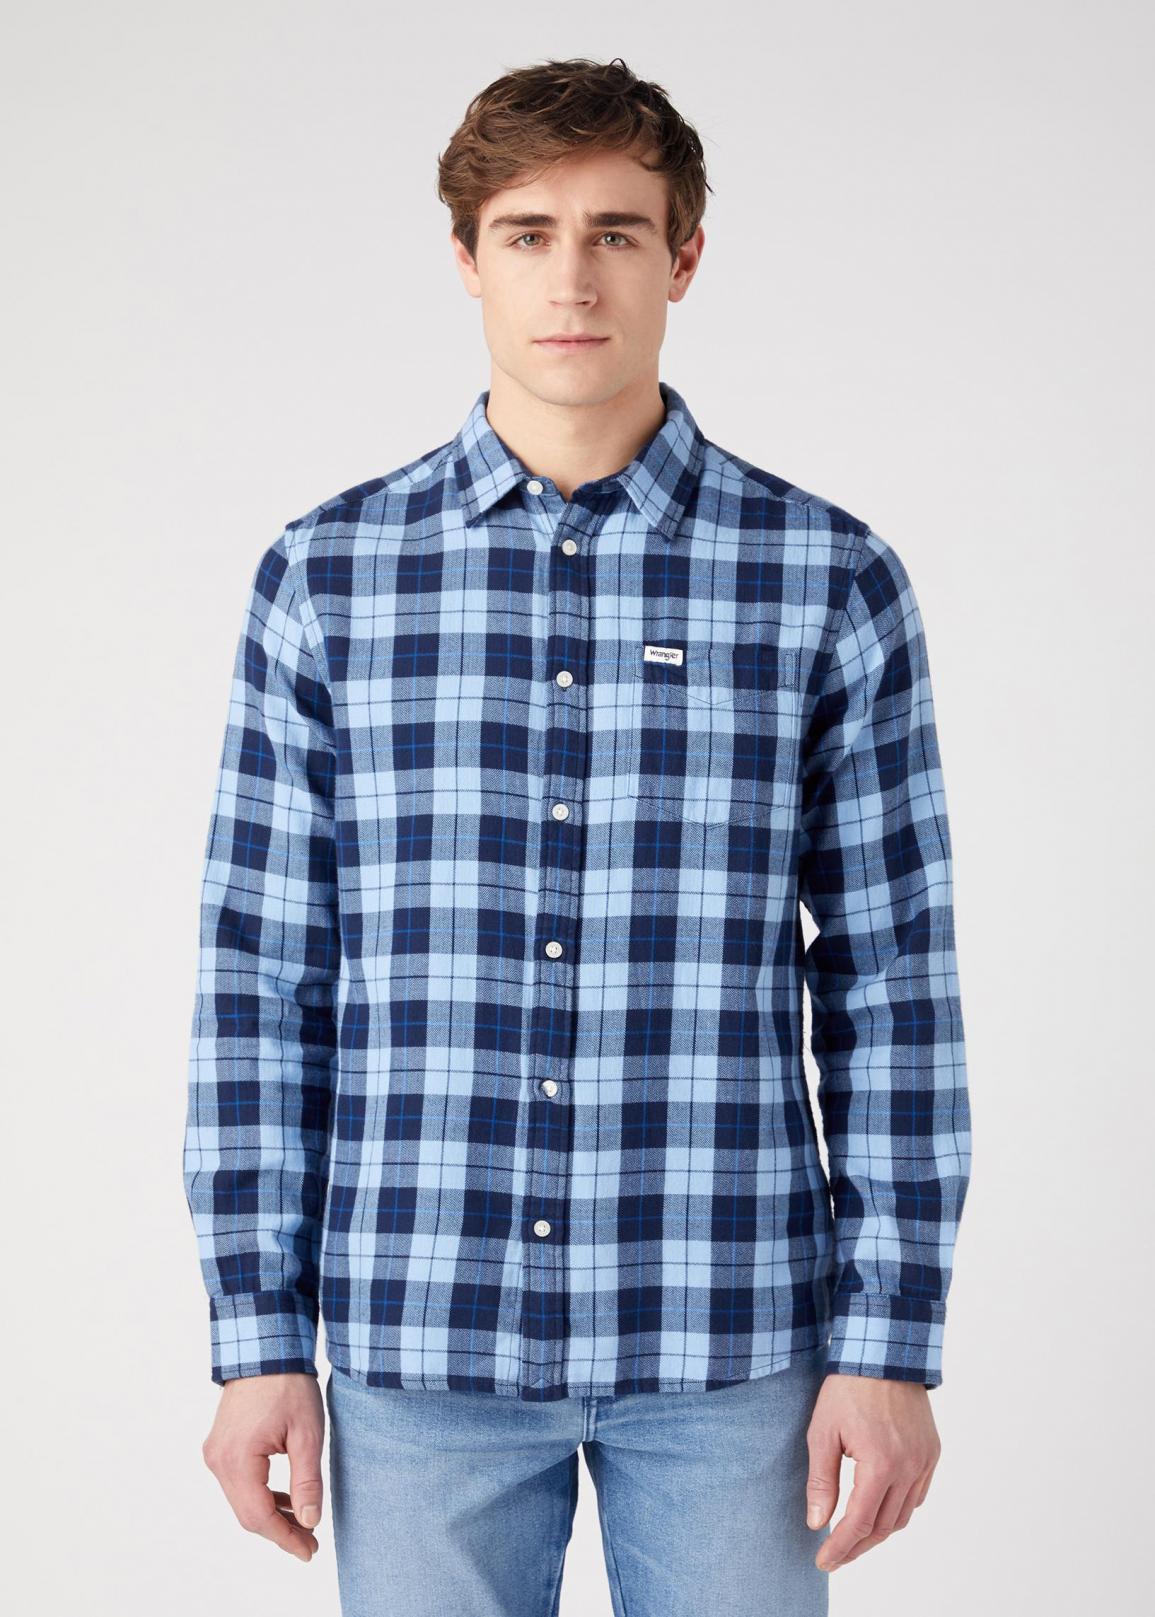 Wrangler® One Pocket Shirt - Cerulean Blue Check